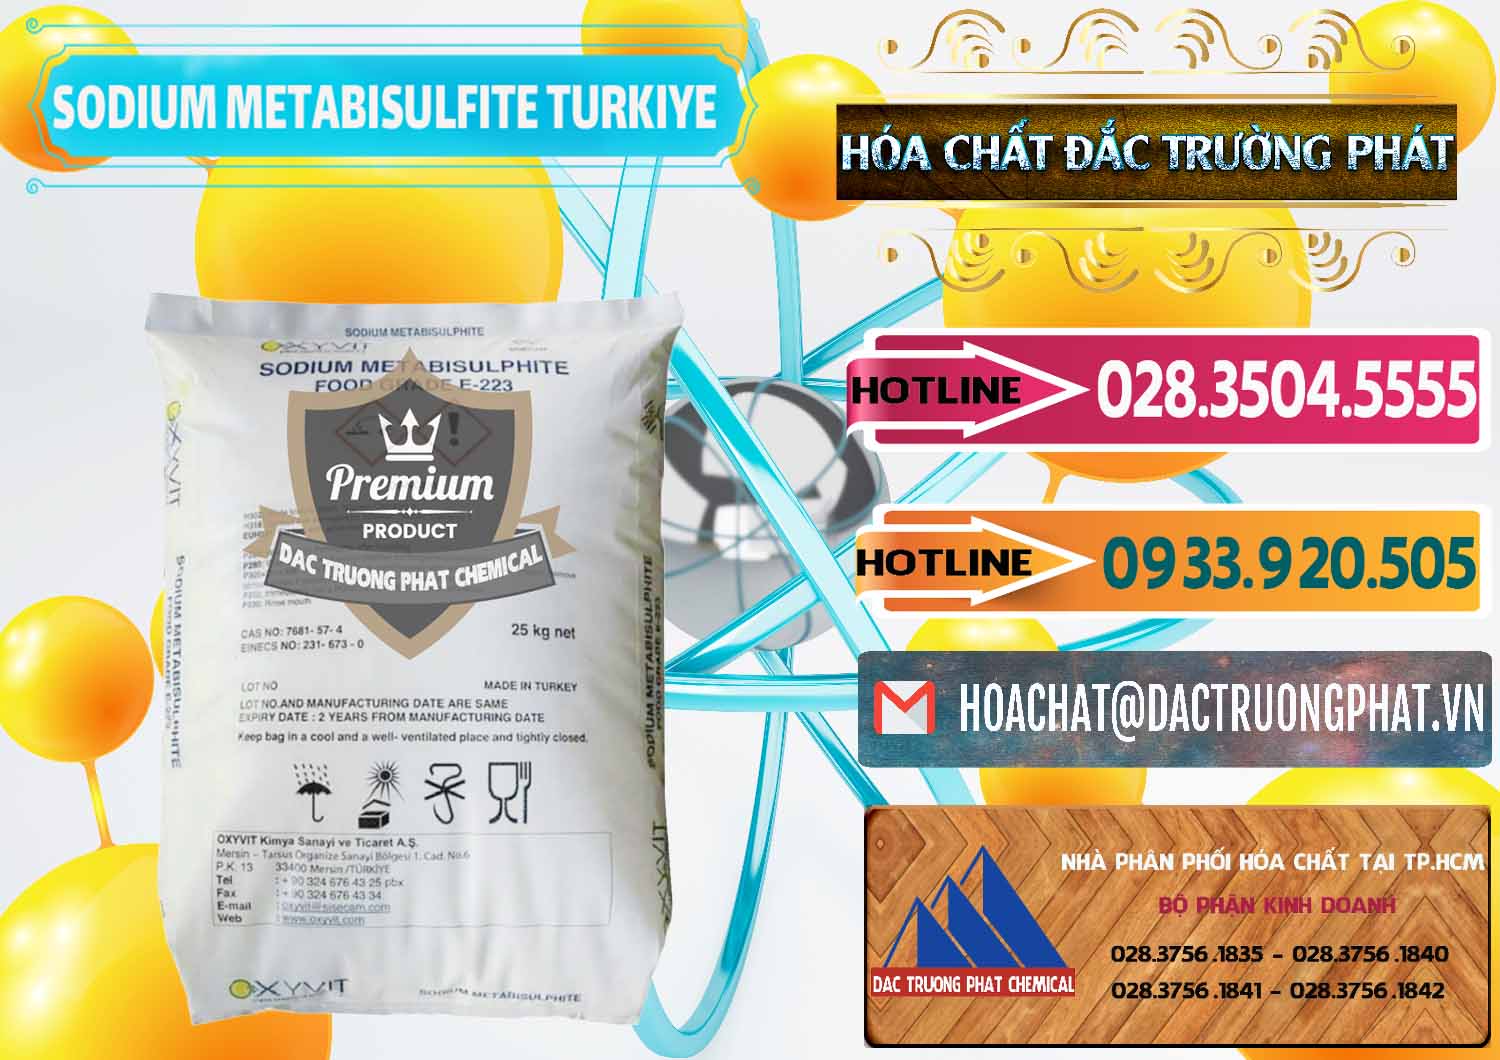 Đơn vị chuyên bán - cung cấp Sodium Metabisulfite - NA2S2O5 Food Grade E-223 Thổ Nhĩ Kỳ Turkey - 0413 - Đơn vị chuyên bán và phân phối hóa chất tại TP.HCM - dactruongphat.vn